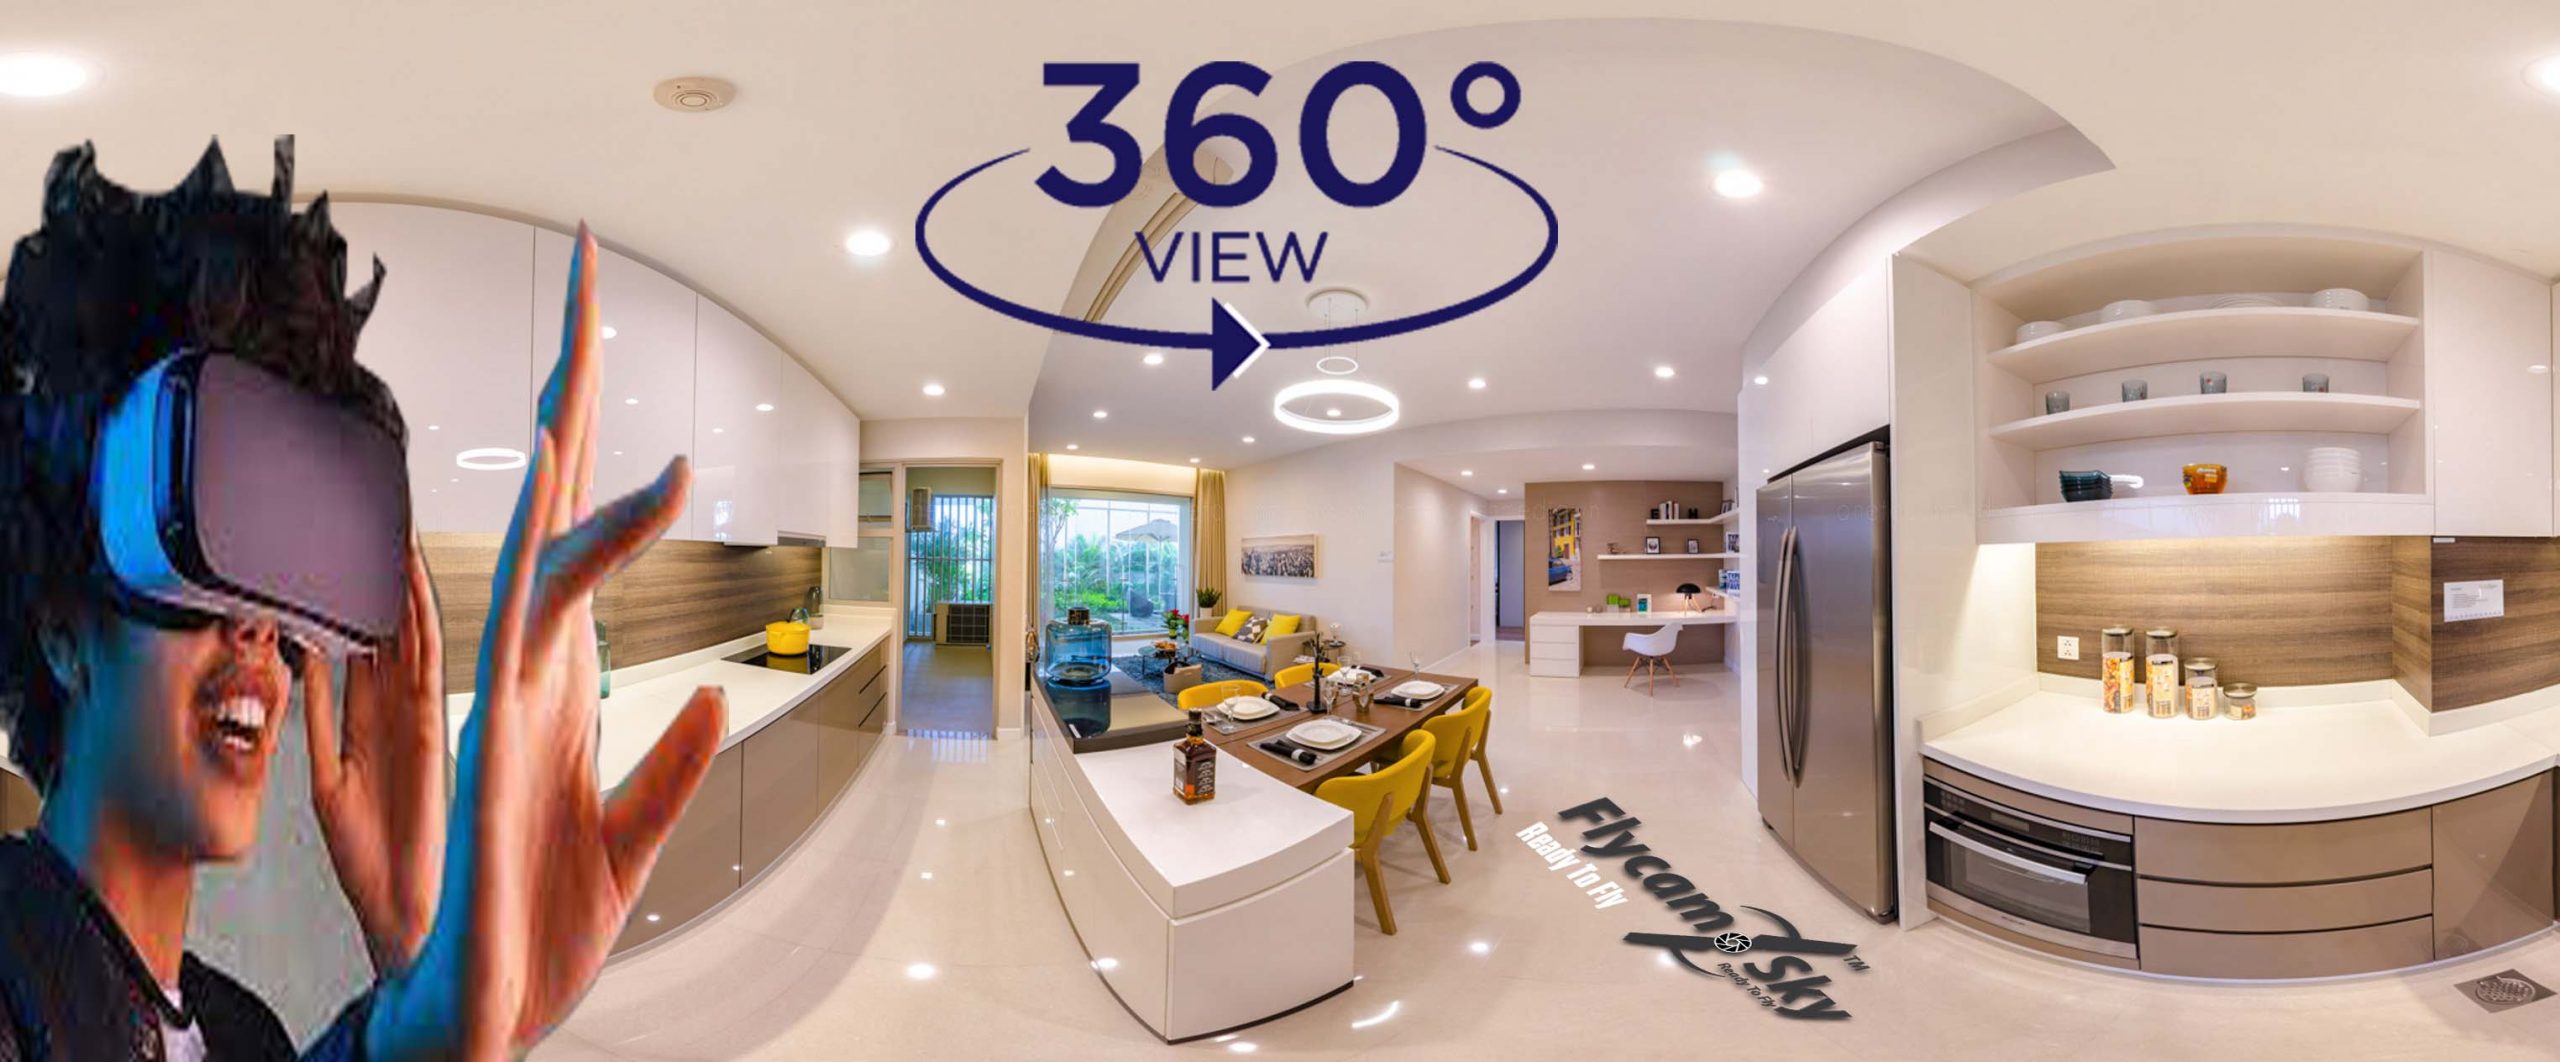 Dịch vụ chụp ảnh 360 độ  Nhà Mẫu, nội thất Căn Hộ tại Tp Hồ Chí Minh